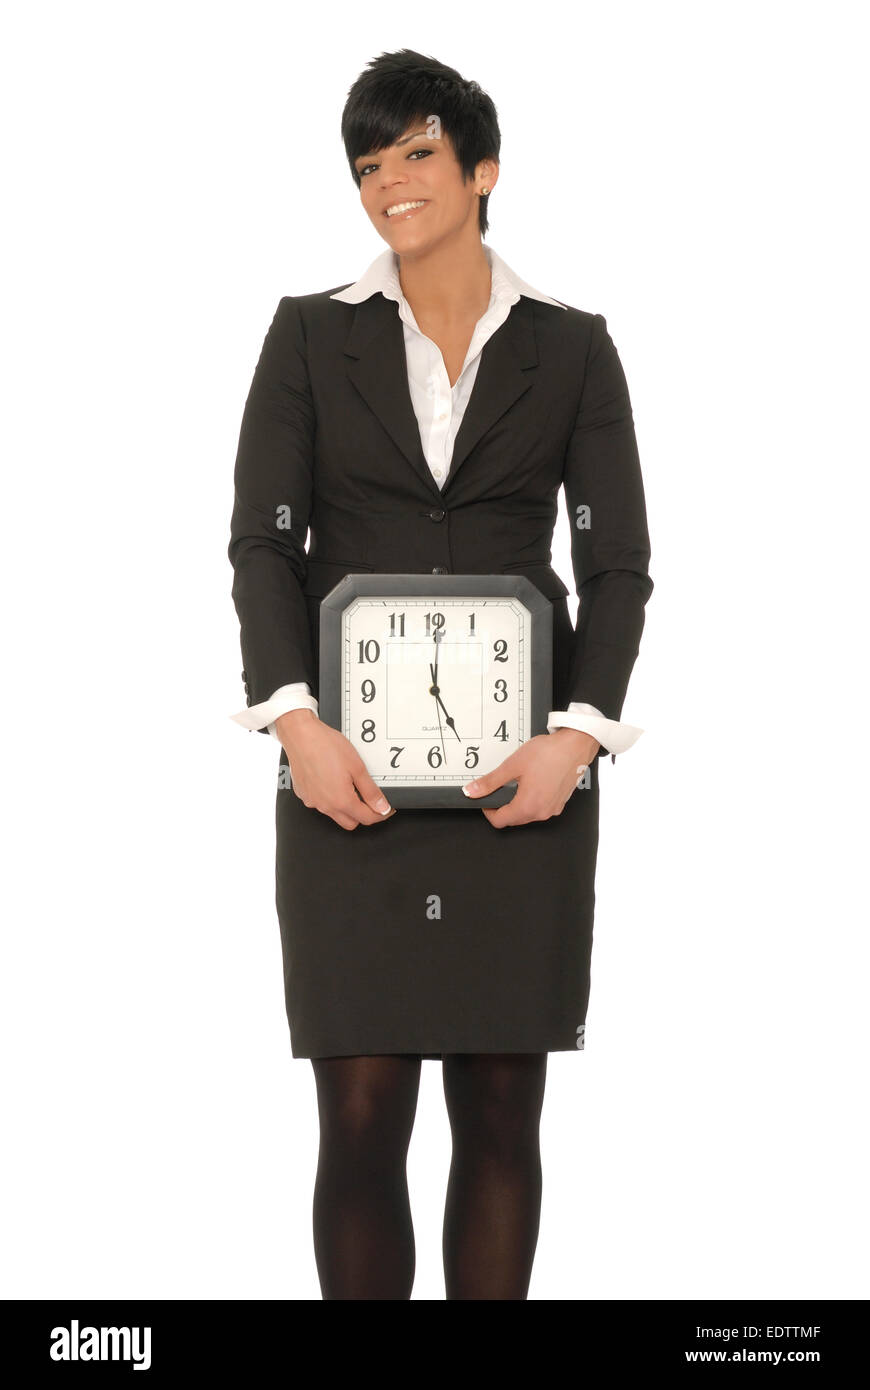 Business-Frau mit einem Klick, der 05:00 liest.  Sehr früh am Morgen 05:00 oder beenden Zeit auf einen 9-5 Job können dargestellt werden. Stockfoto